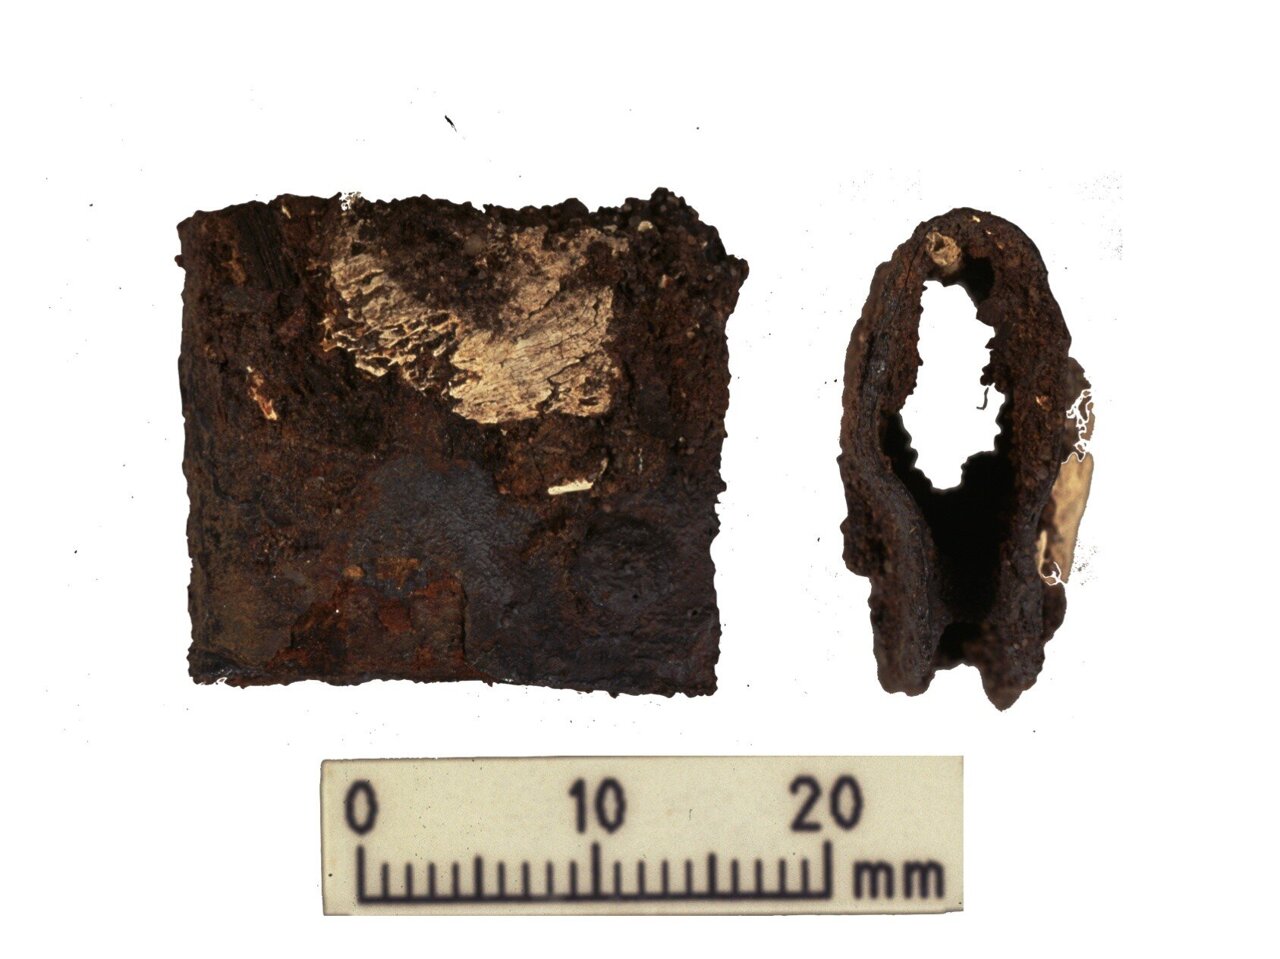 Sluiting van het schild van de Vikingstrijder gevonden tijdens de oorspronkelijke opgravingen in 1998-2000. De sluiting is gevonden in hetzelfde graf als de menselijke en dierlijke resten die tijdens het laatste onderzoek zijn geanalyseerd.